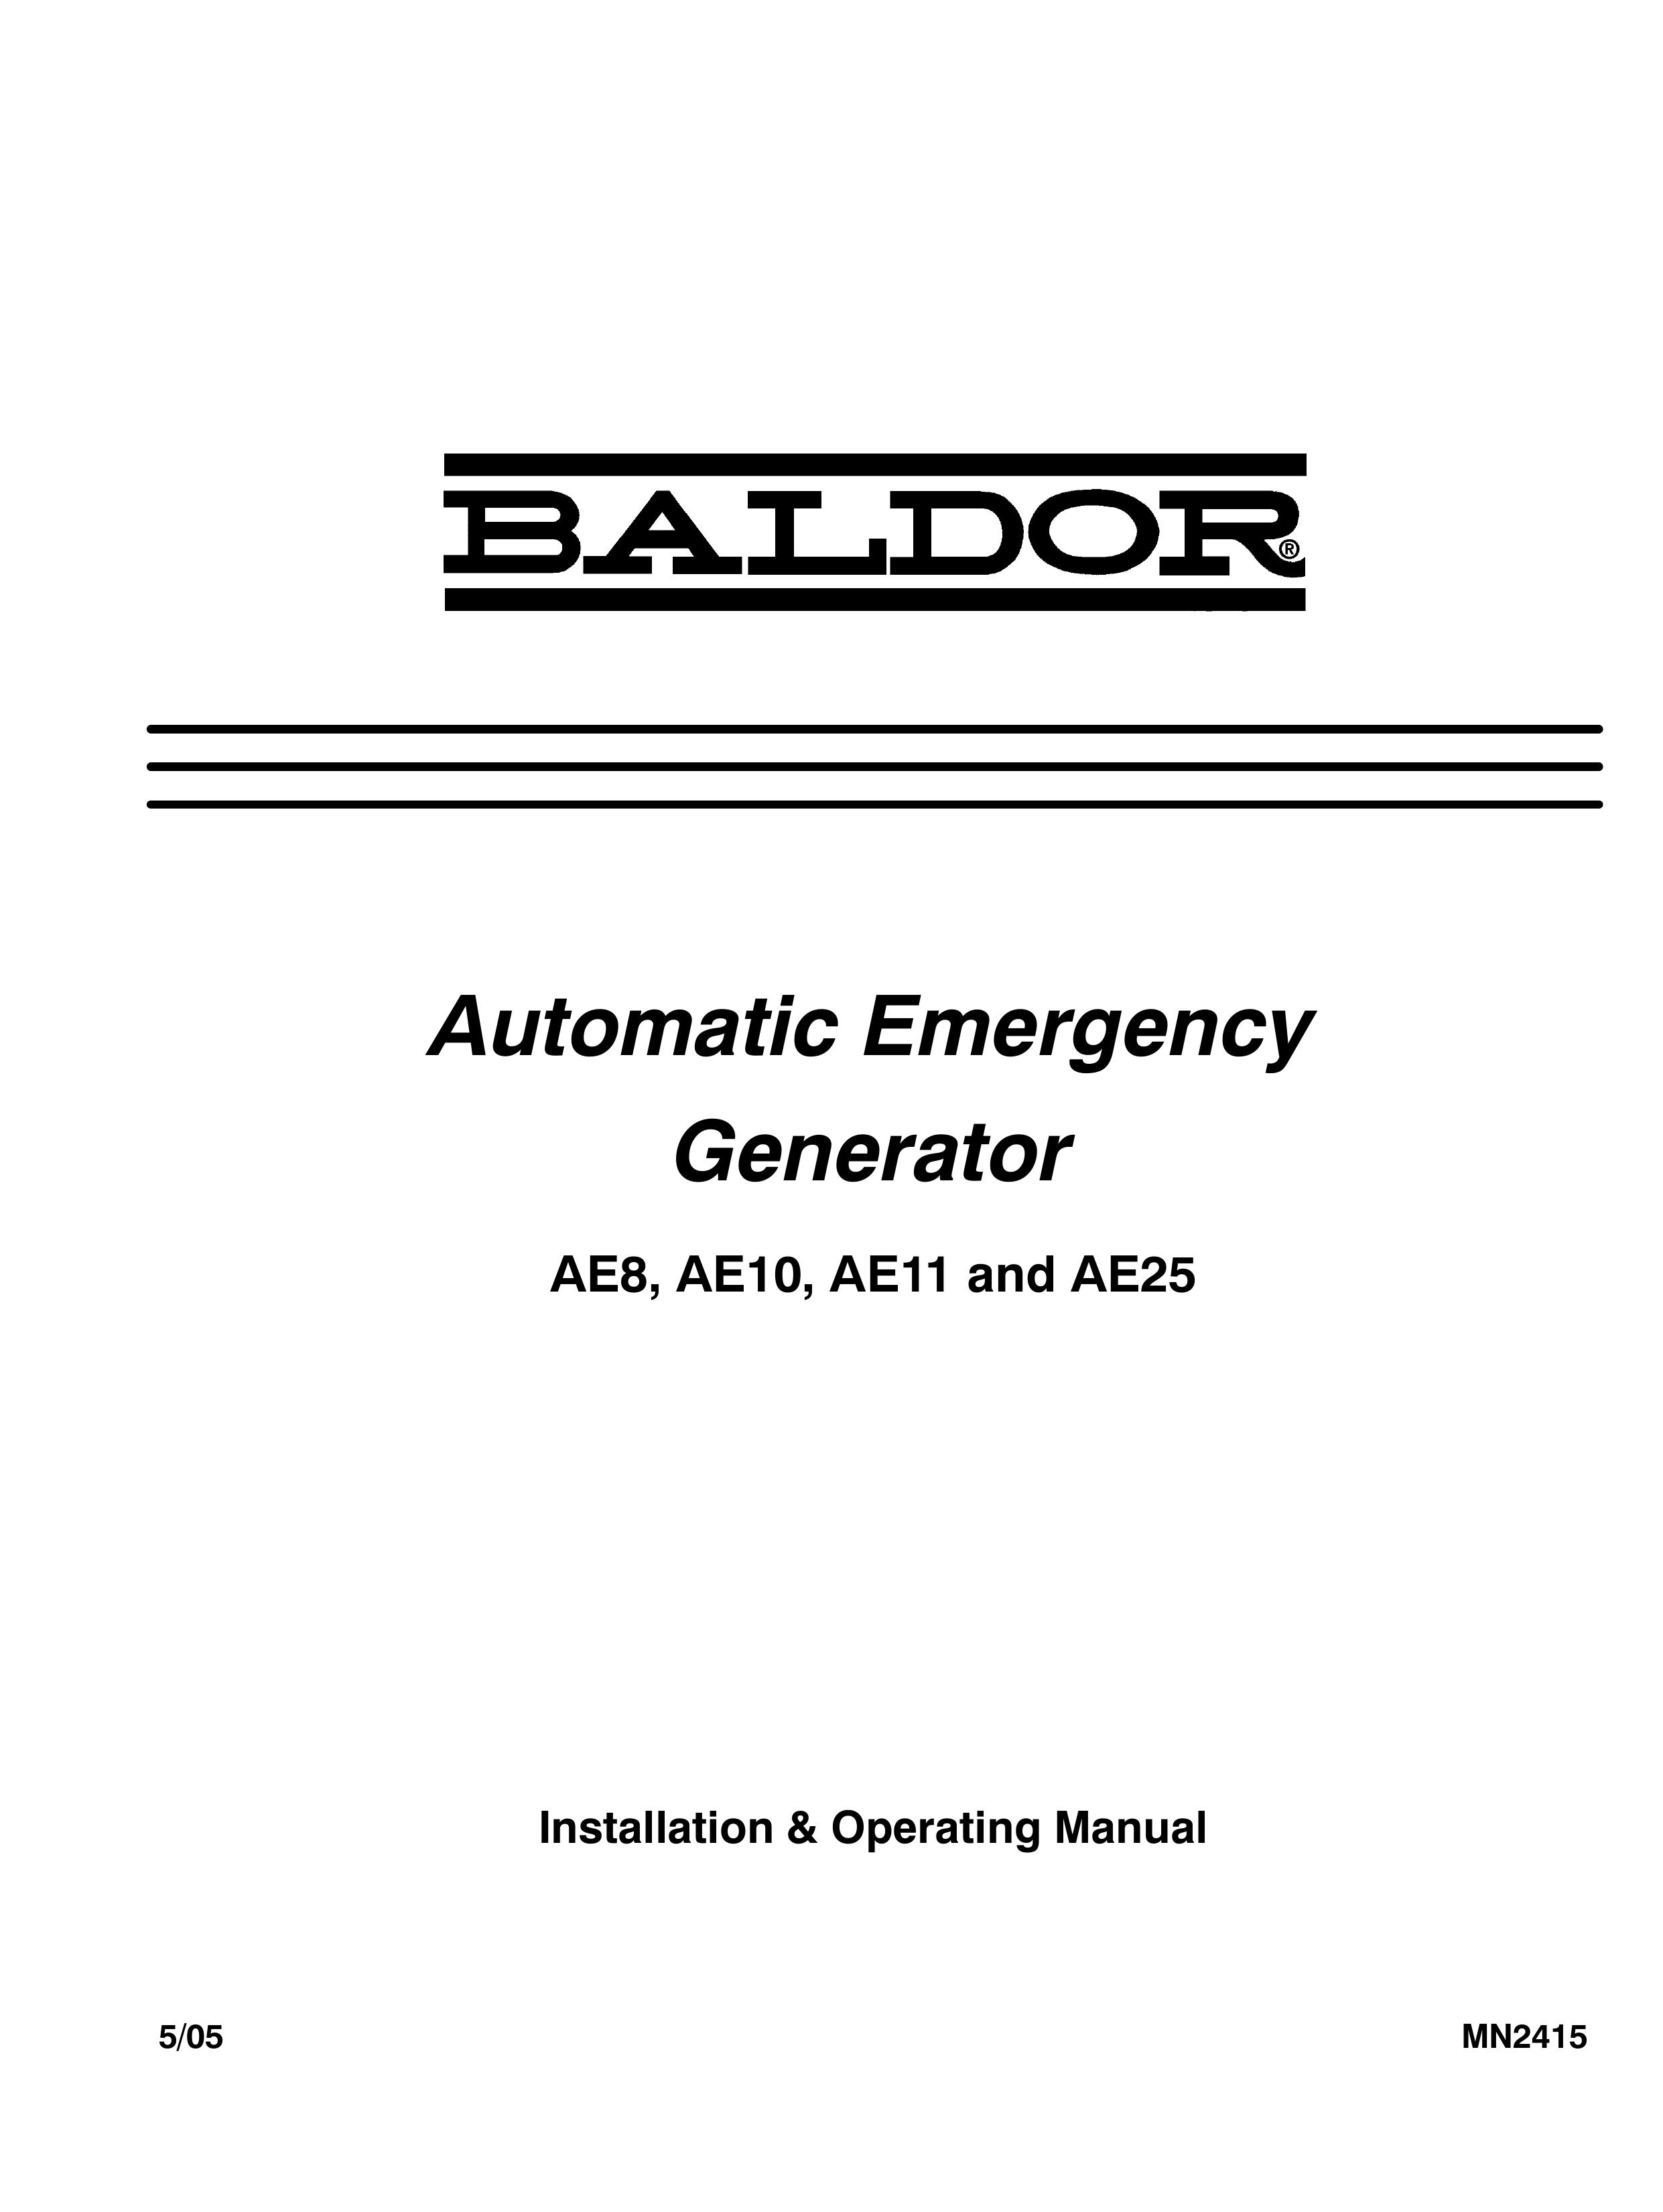 Baldor AE10 Portable Generator User Manual